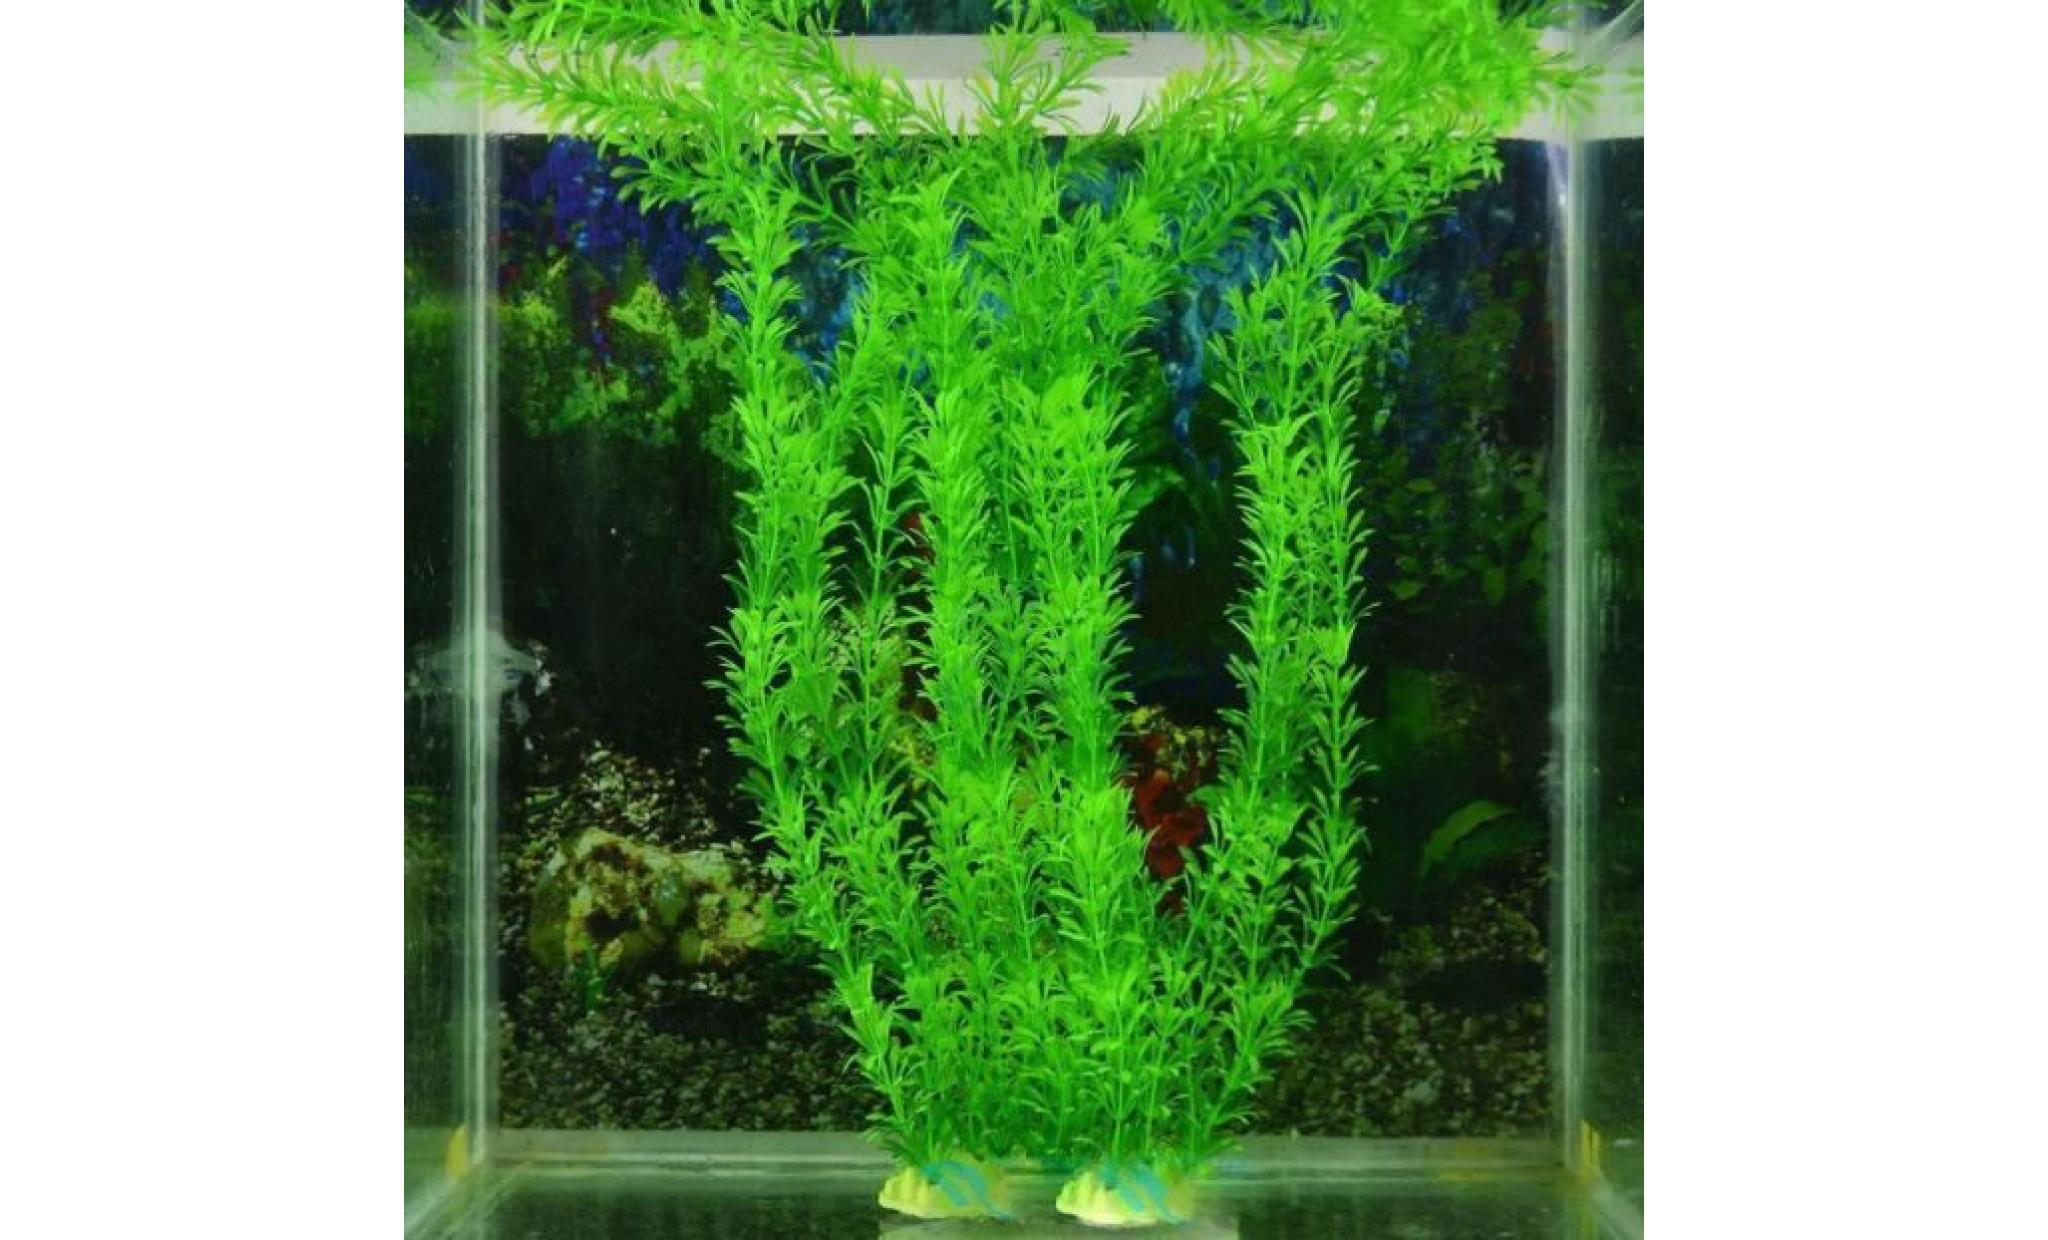 livraison gratuite 13 plastique gazon artificiel réservoir de poissons d'eau décoration wdd60309293_381